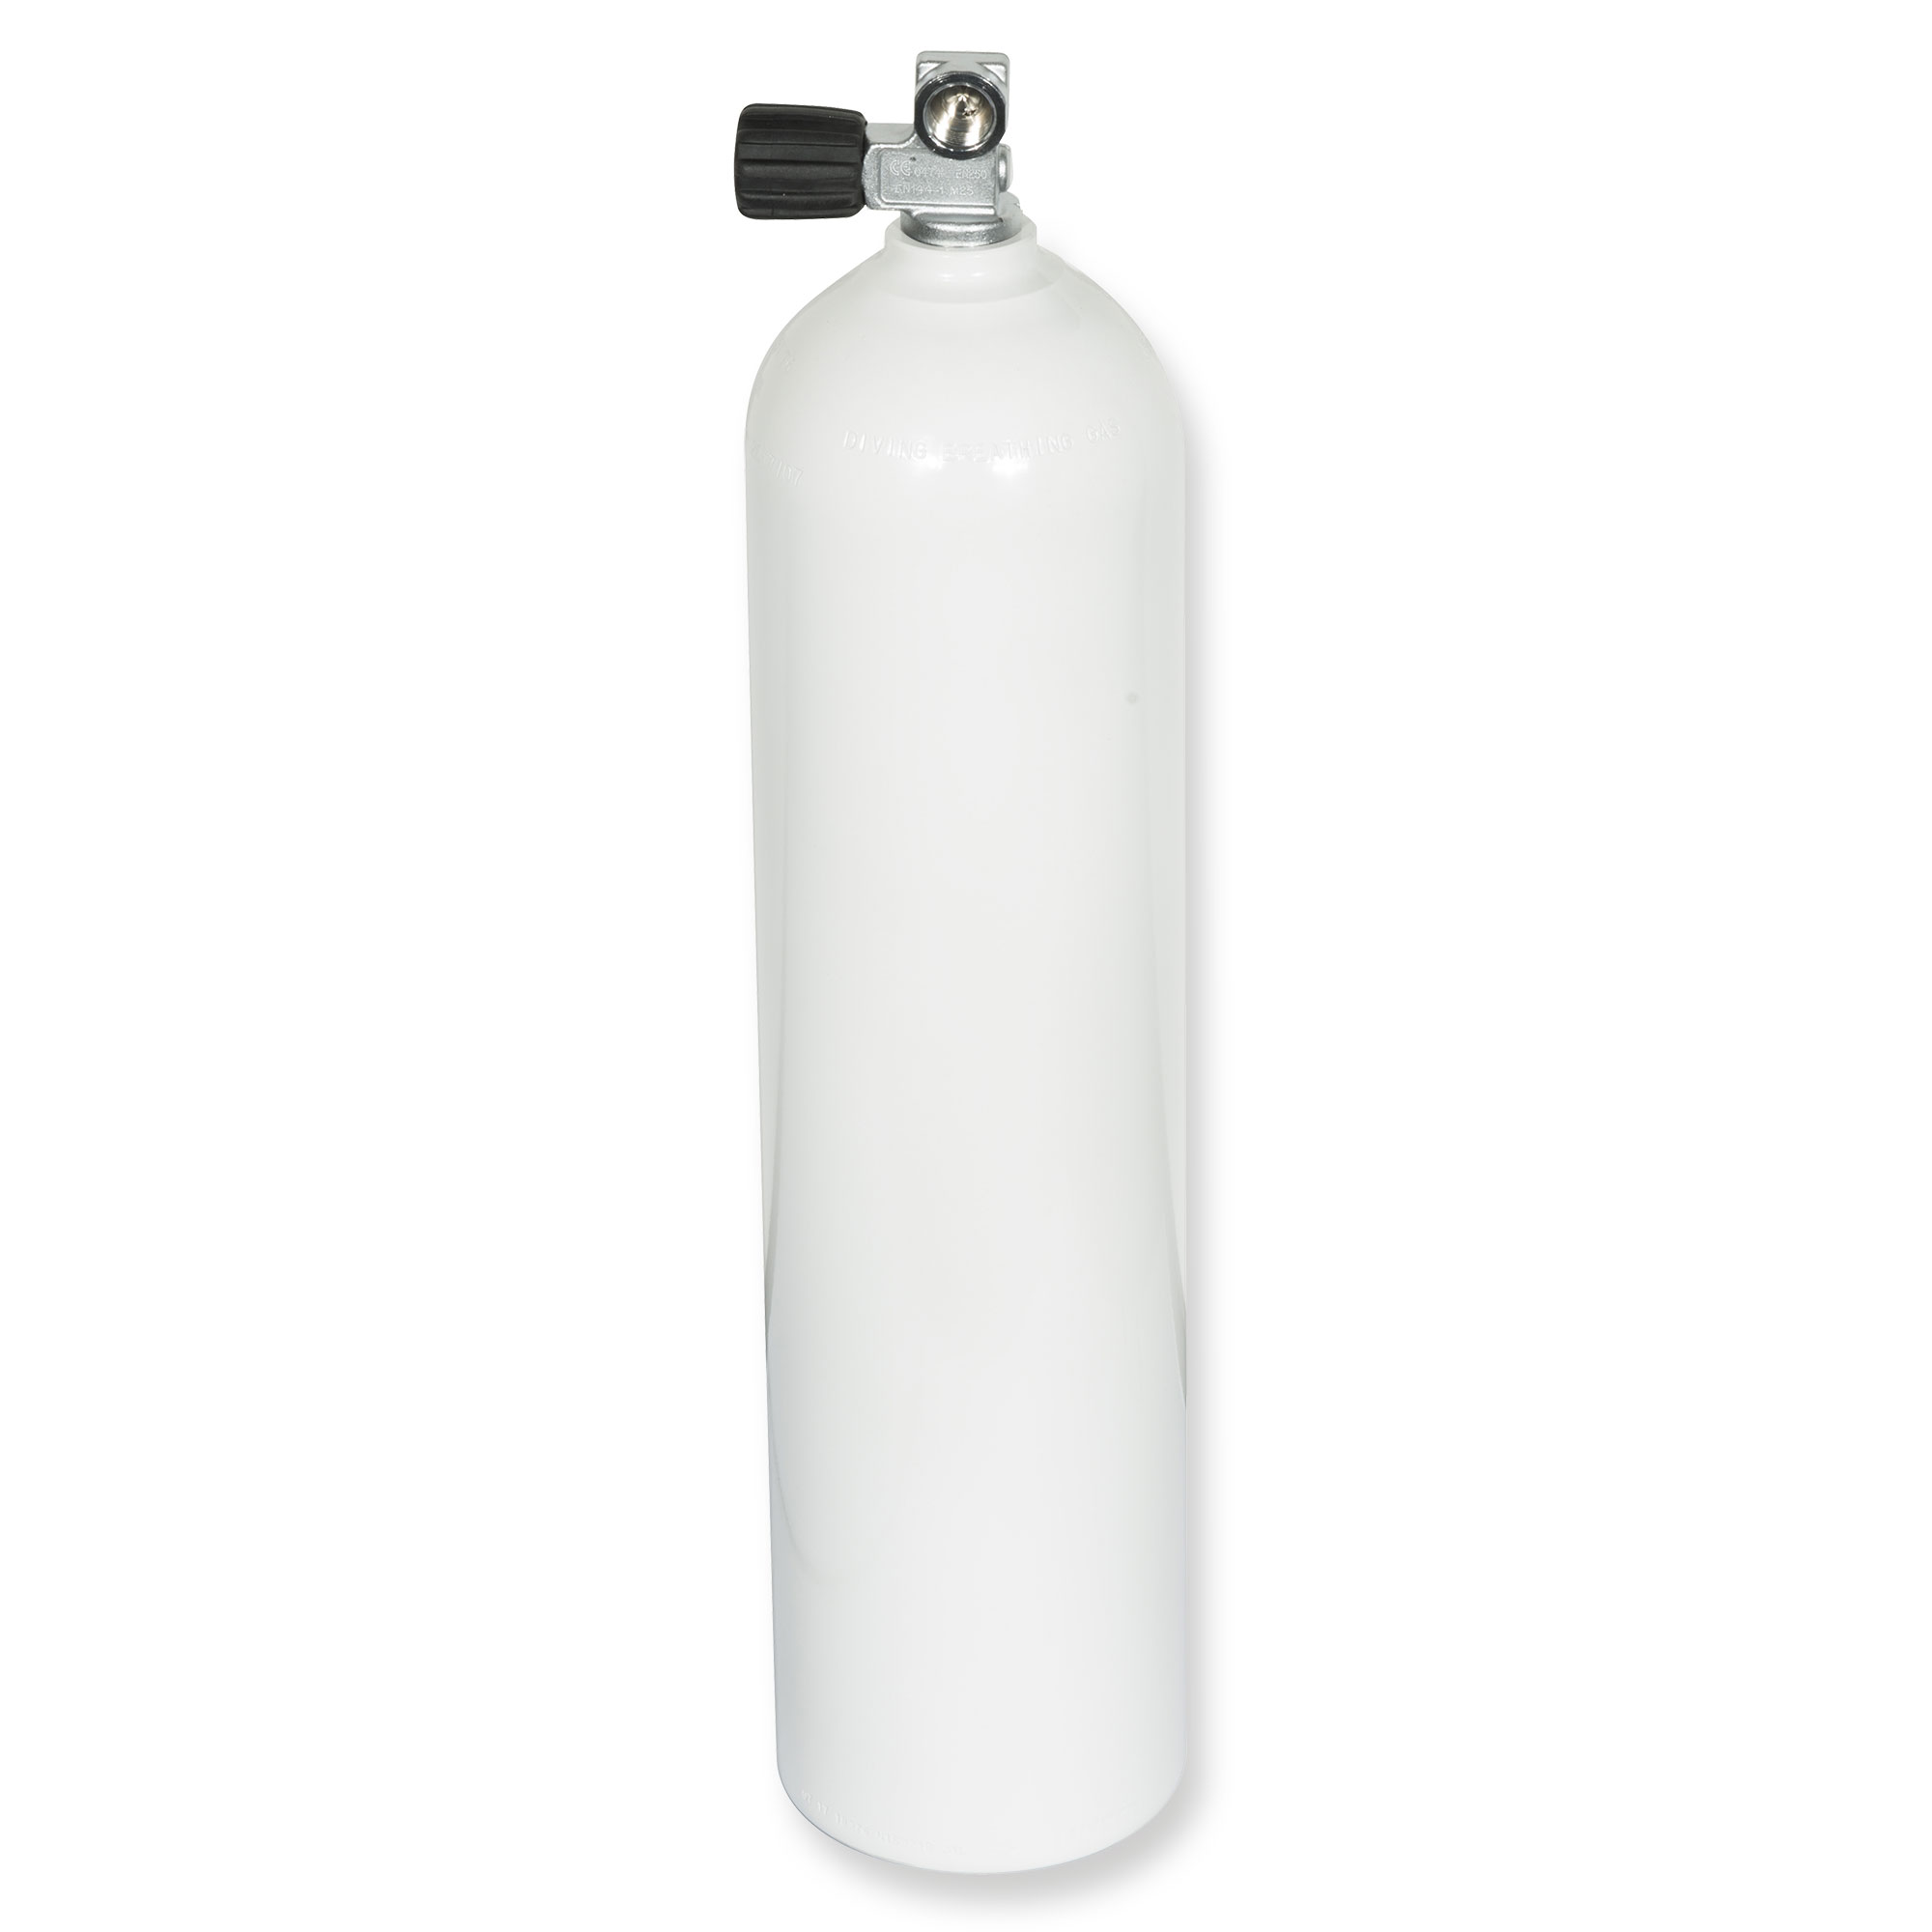 Standfuß für 7 Liter Pressluftflasche 140 mm Durchmesser NEU !!! 